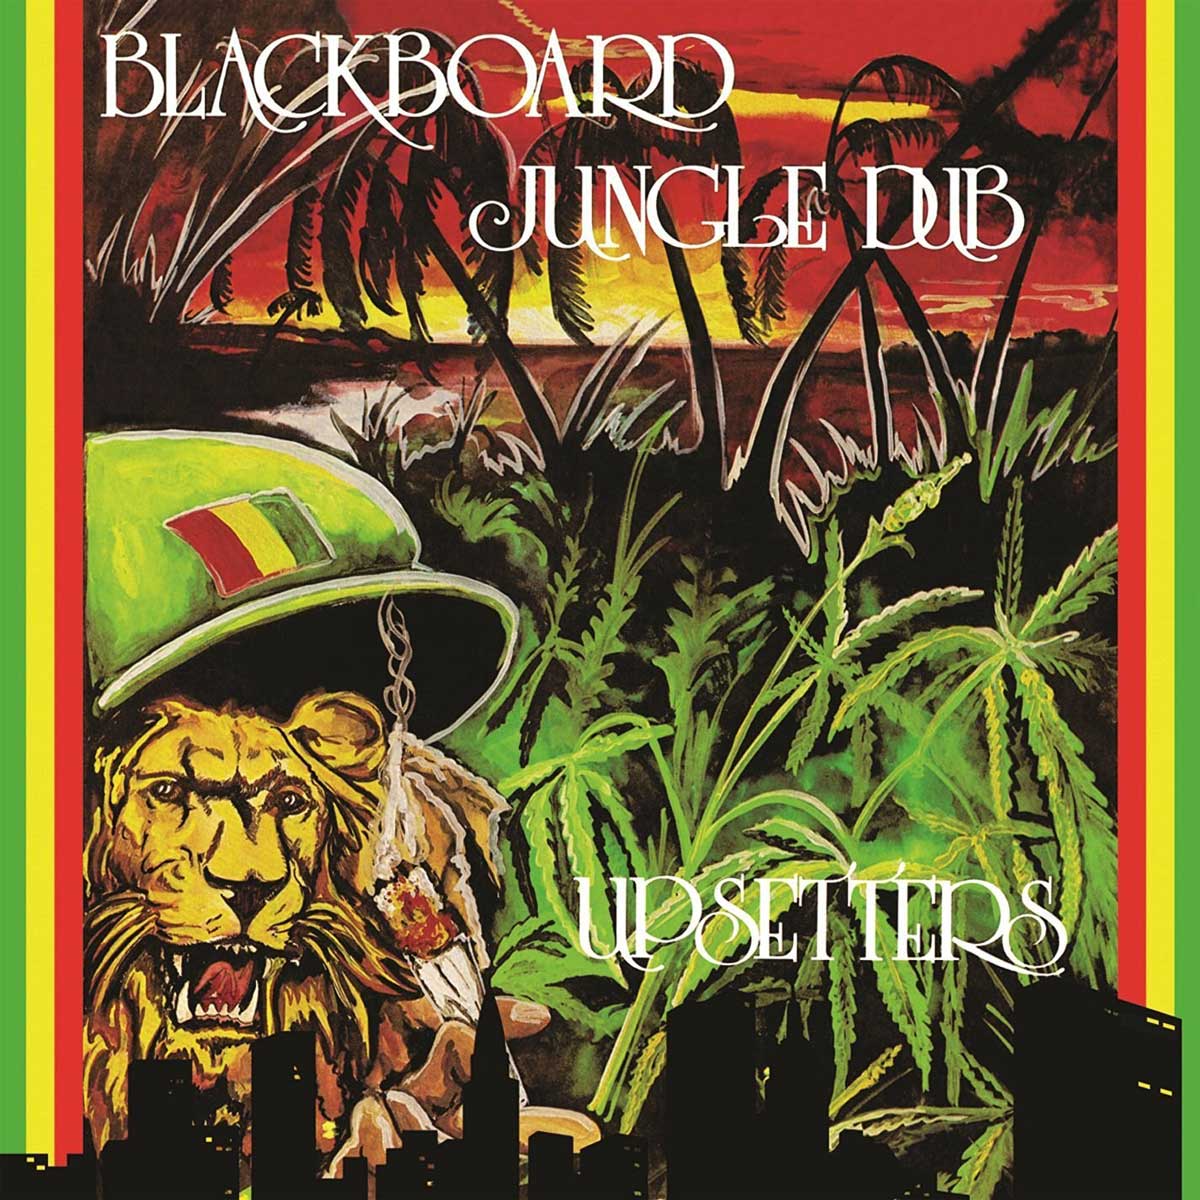 Vinile Upsetters The - Blackboard Jungle Dub NUOVO SIGILLATO EDIZIONE DEL SUBITO DISPONIBILE